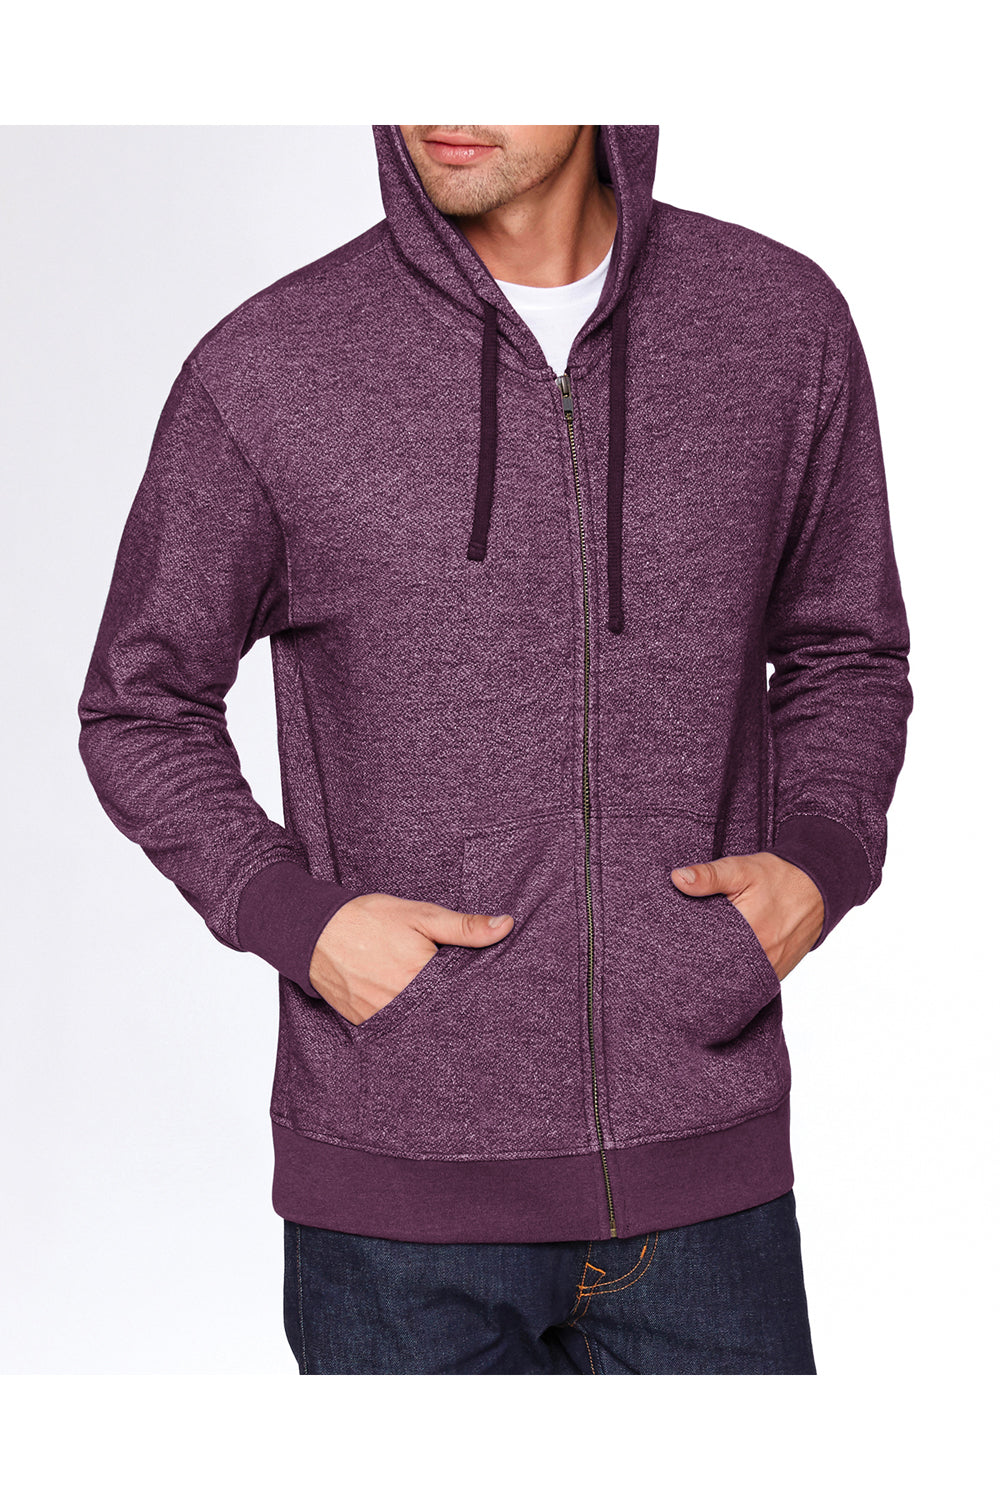 Next Level 9600 Mens Denim Fleece Full Zip Hooded Sweatshirt Hoodie Plum Purple Front